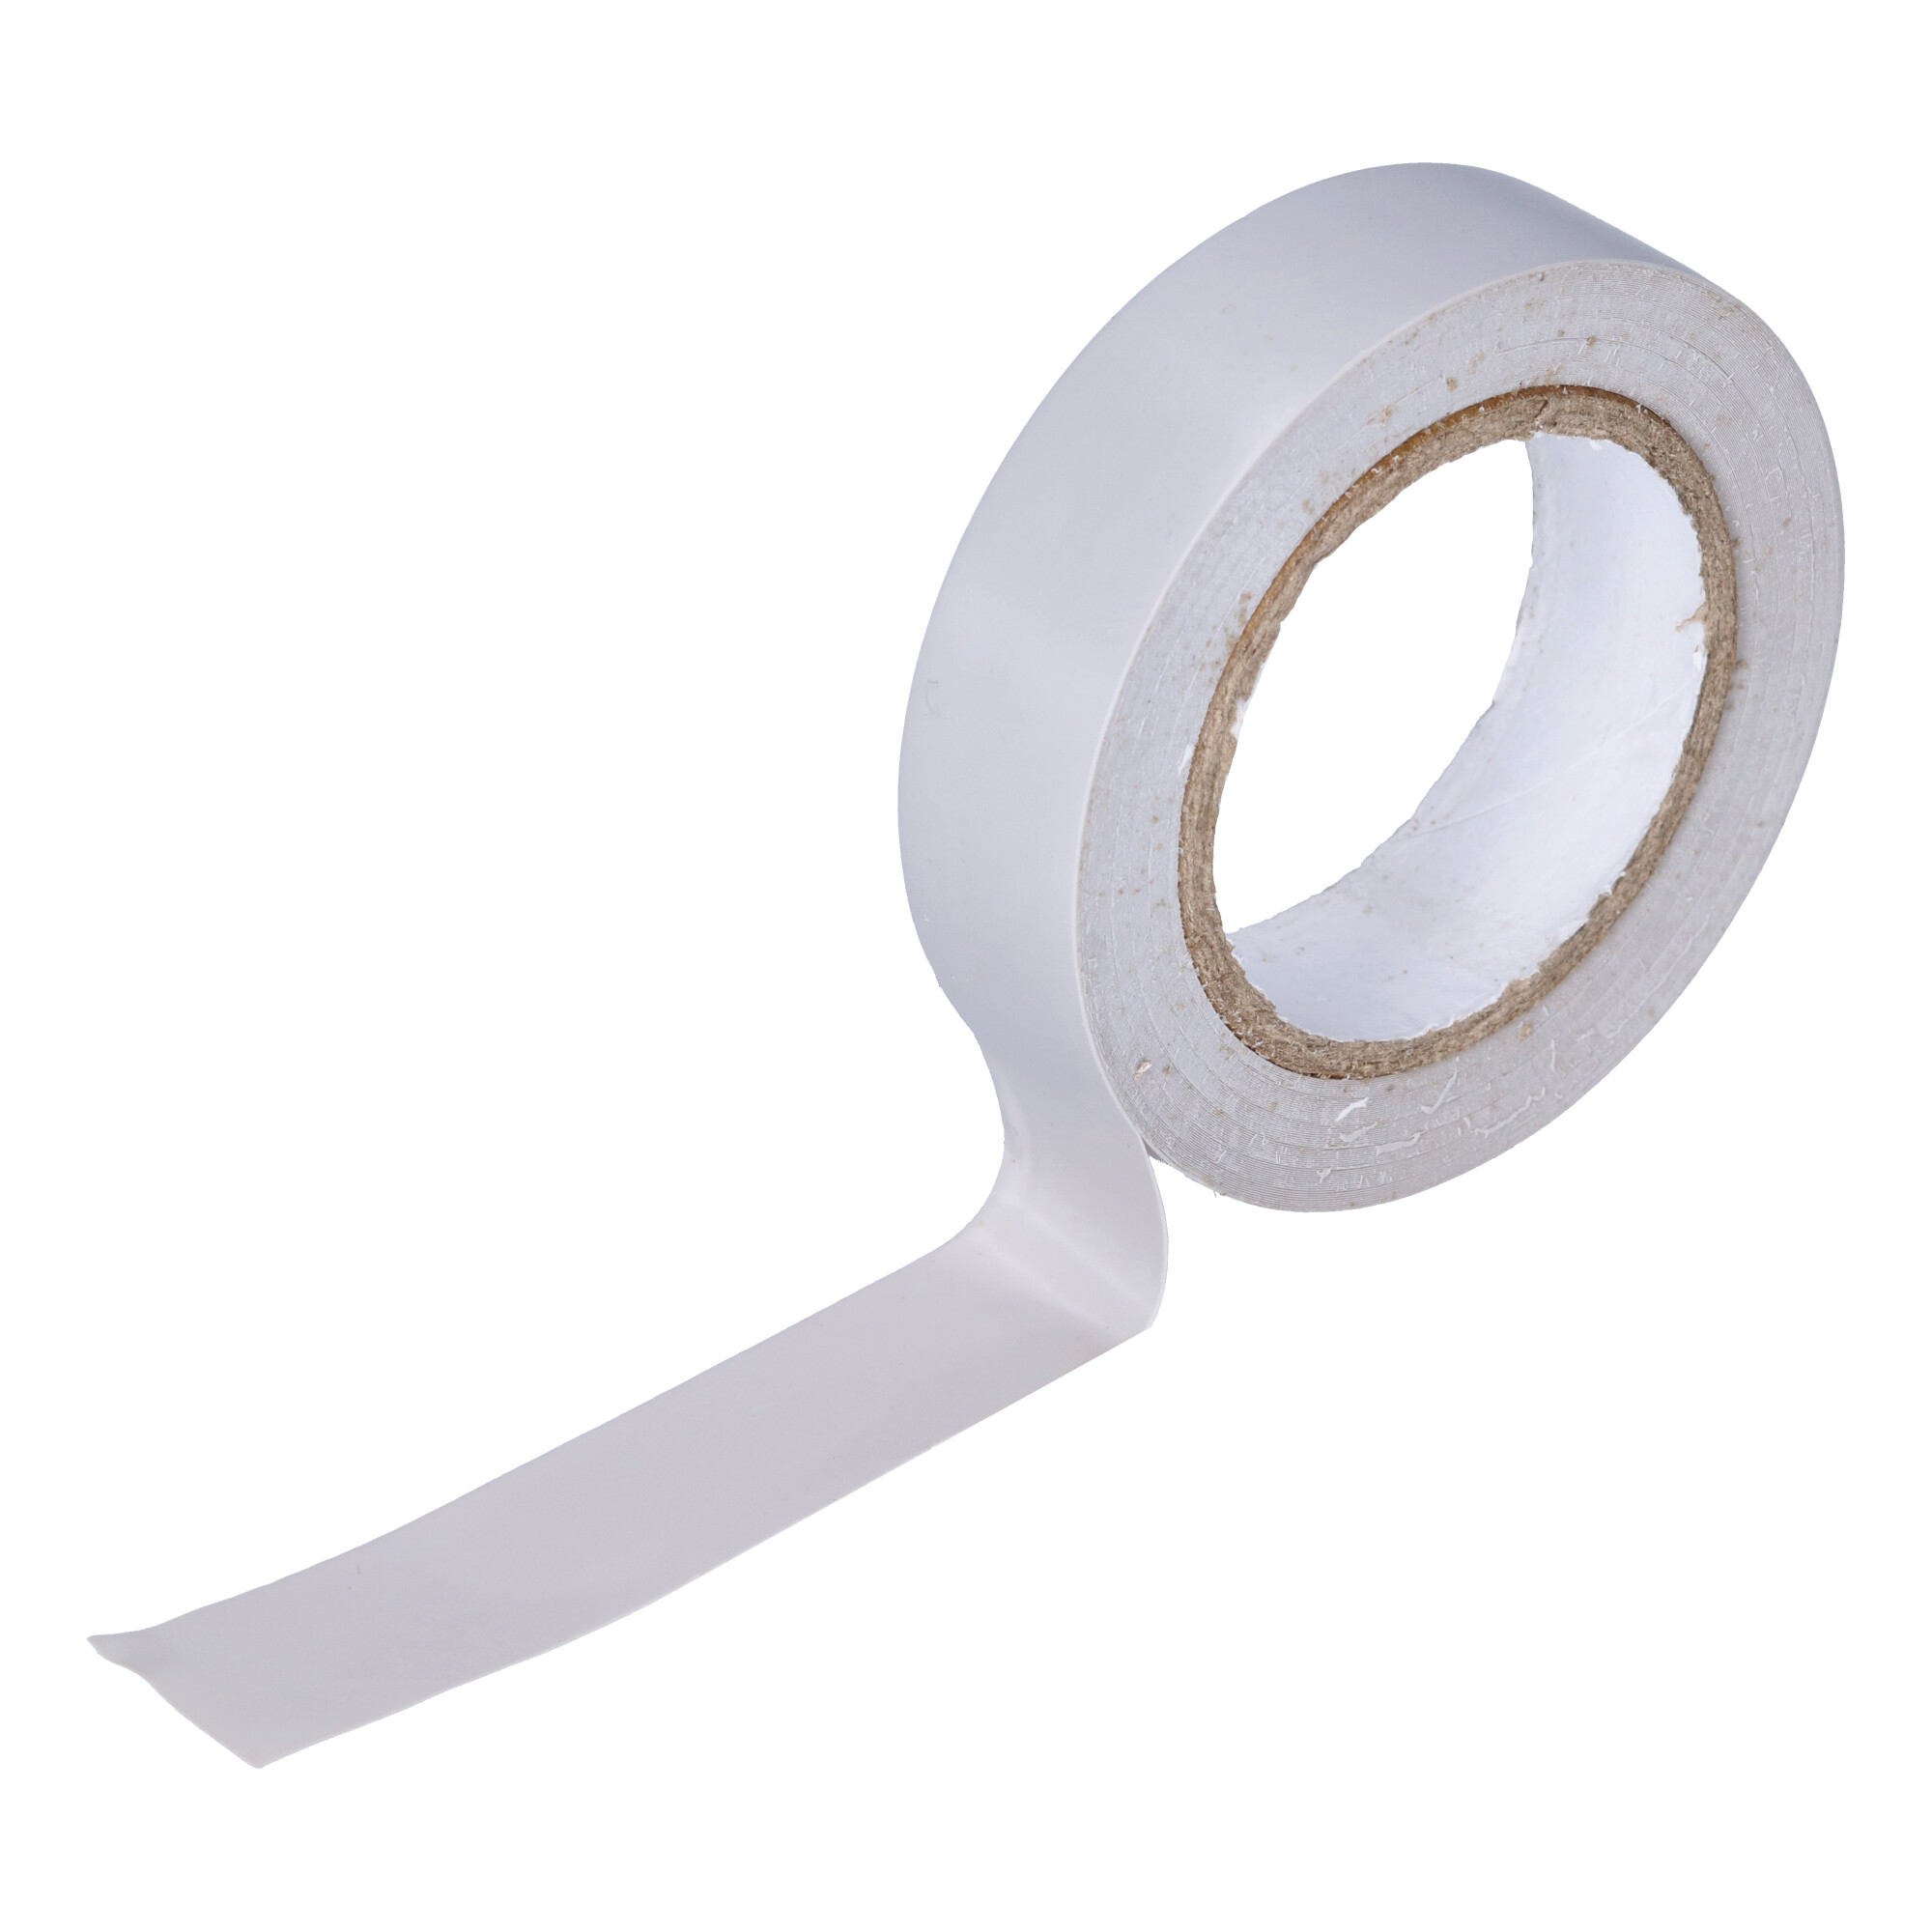 95-NI 14GR PVC adhesive tape